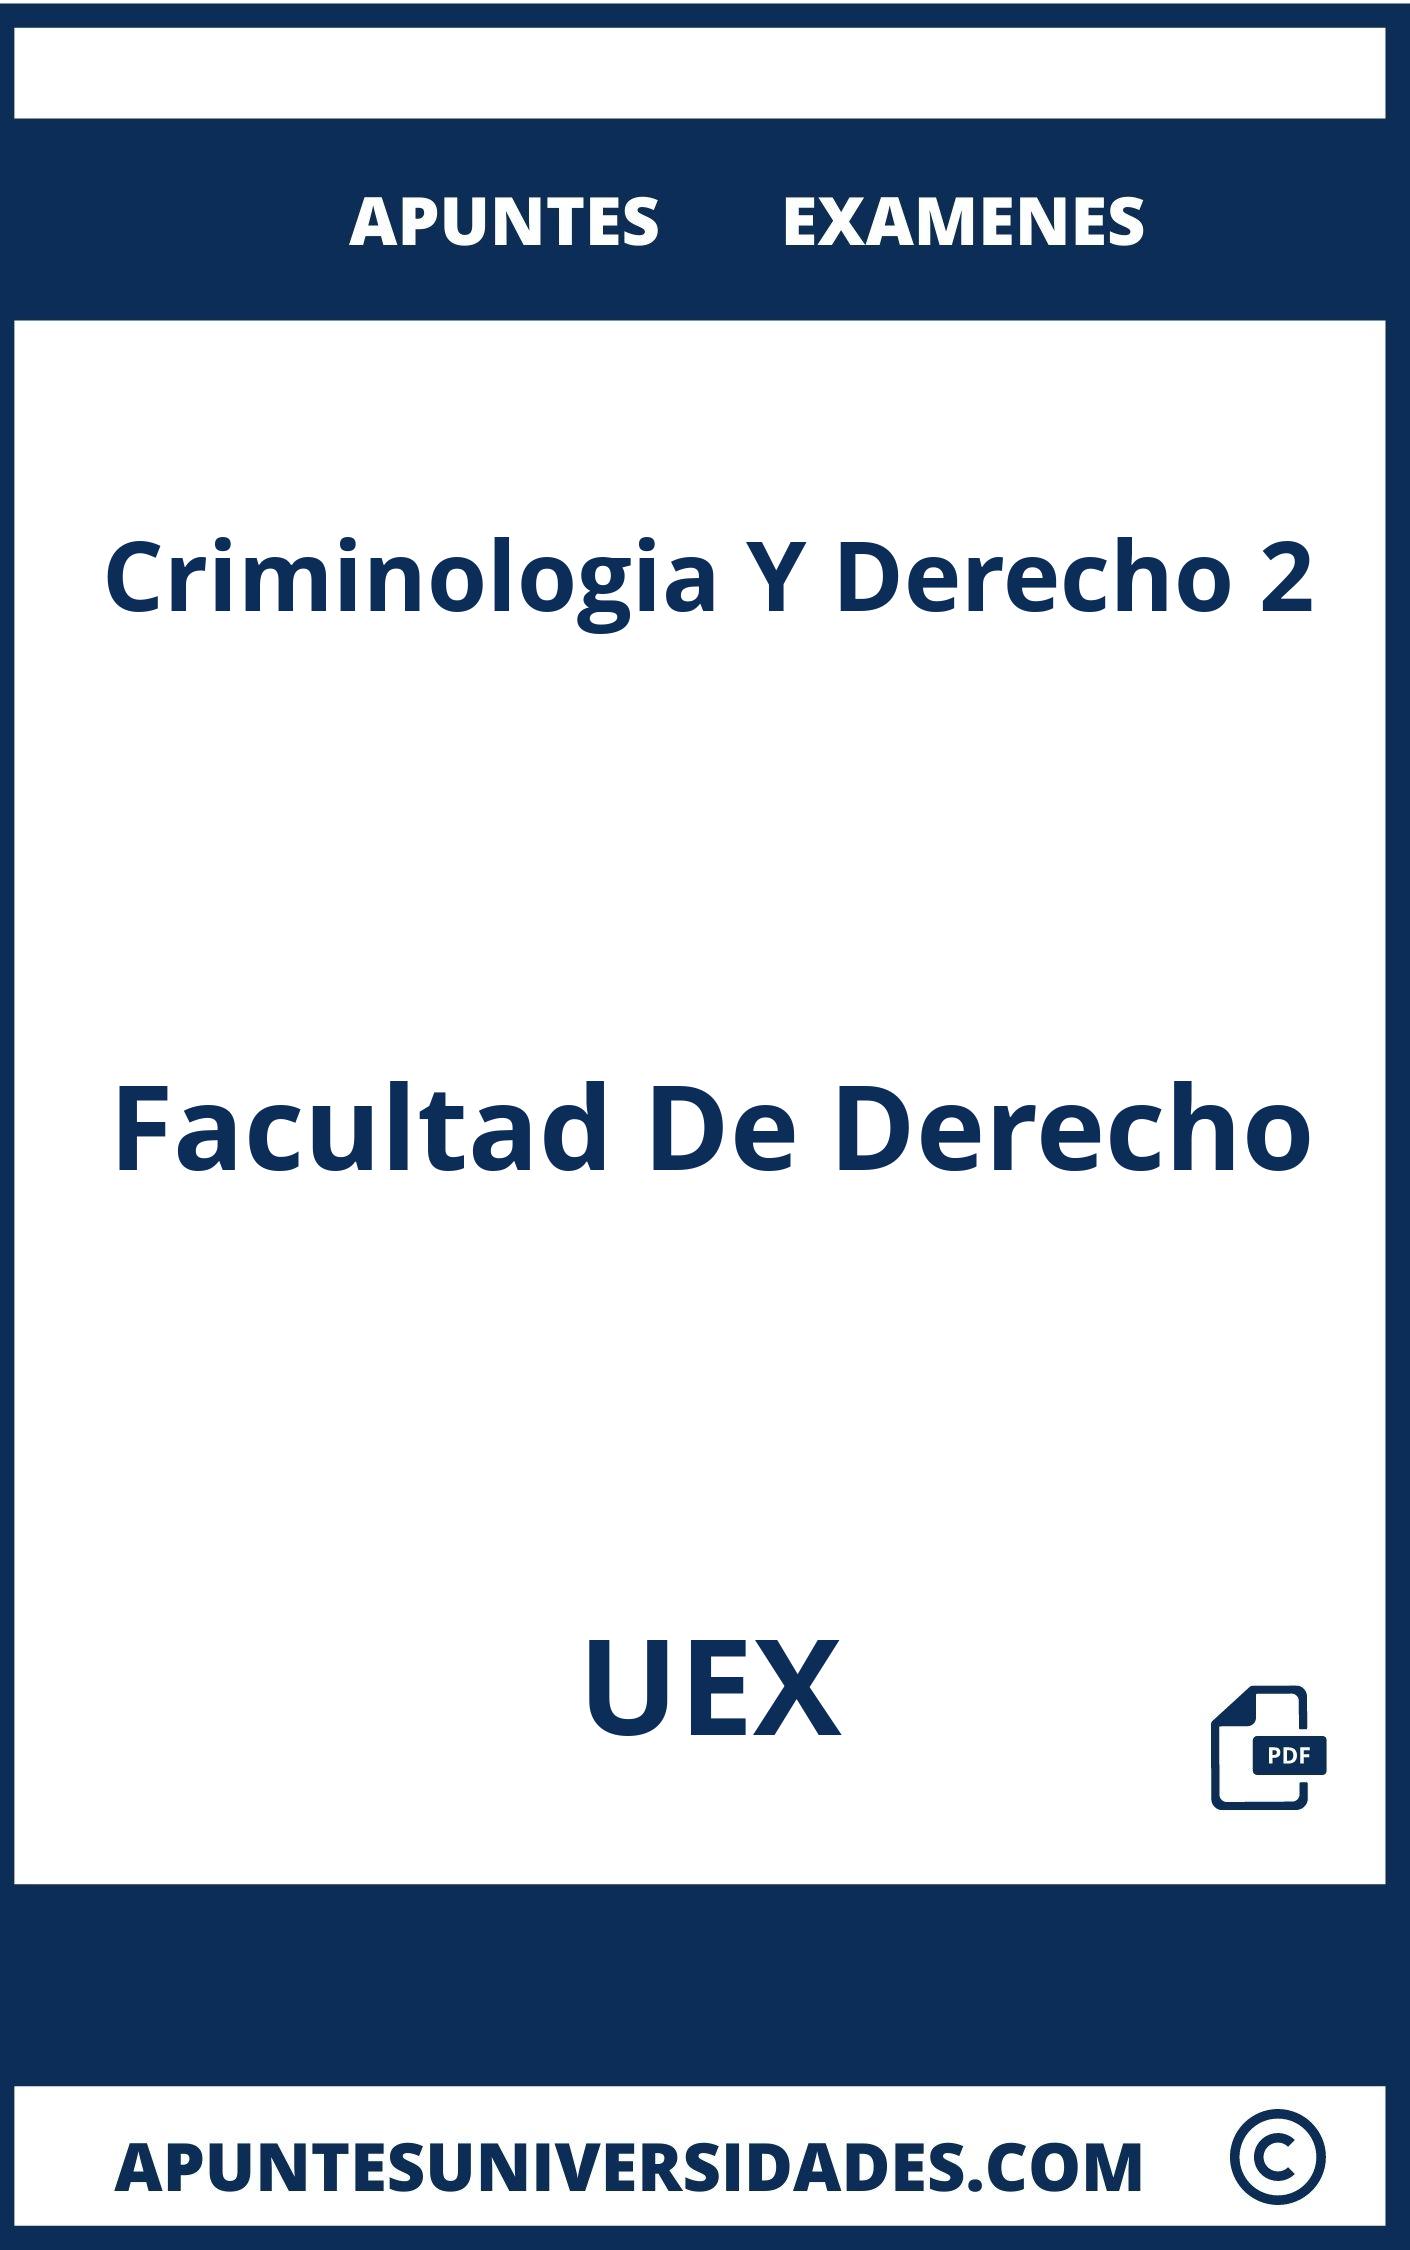 Examenes Apuntes Criminologia Y Derecho 2 UEX